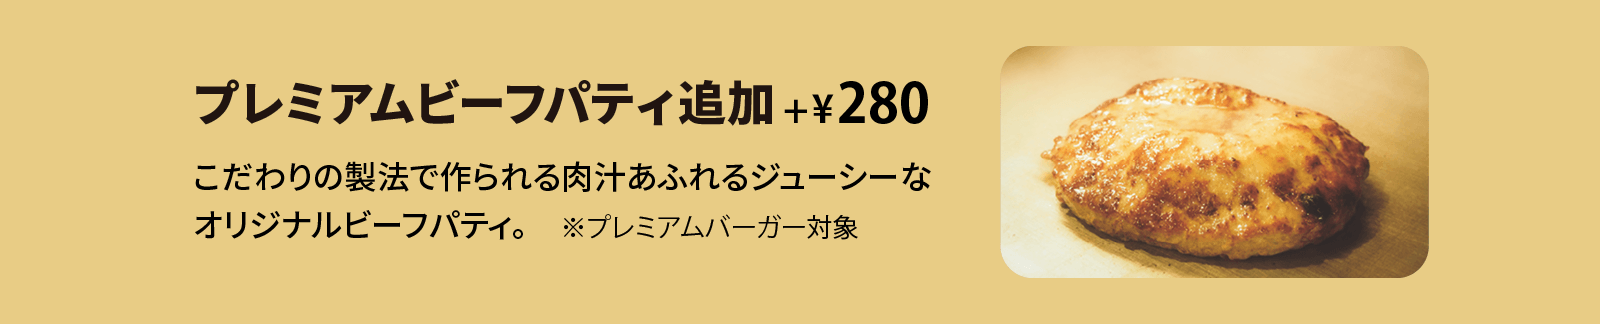 クラシックパティ追加 +¥220 こだわりの製法で作られる肉汁あふれるジューシーなオリジナルビーフパティ。※クラシックシリーズ限定